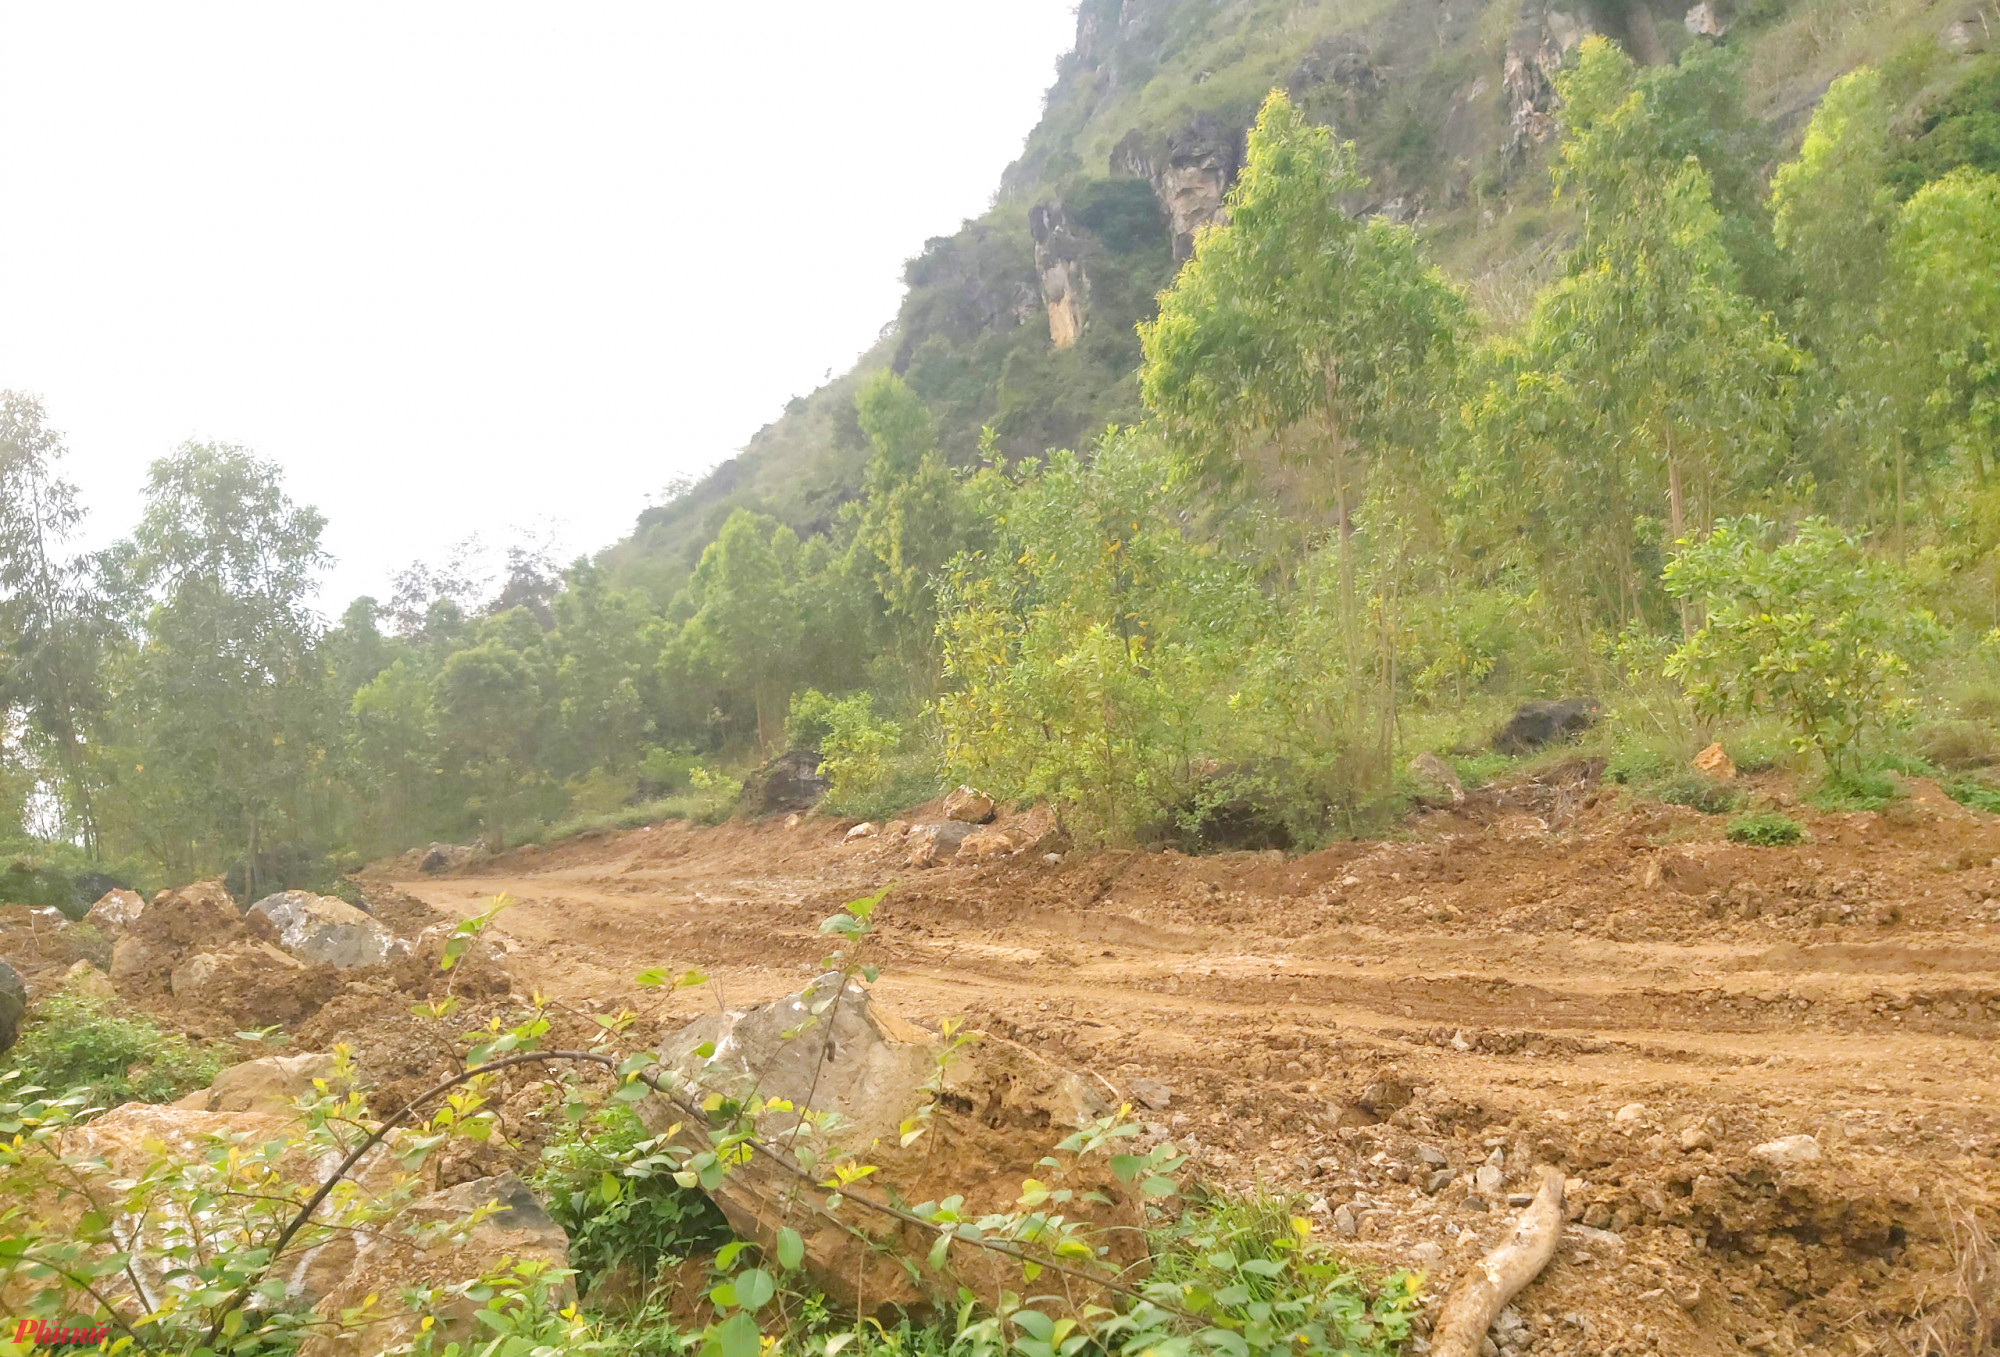 Công ty TNHH Trung Việt Hưng lý giải vì không biết lèn Hai Vai là di tích nên đào đất đá để đắp đường - Ảnh: Phan Ngọc